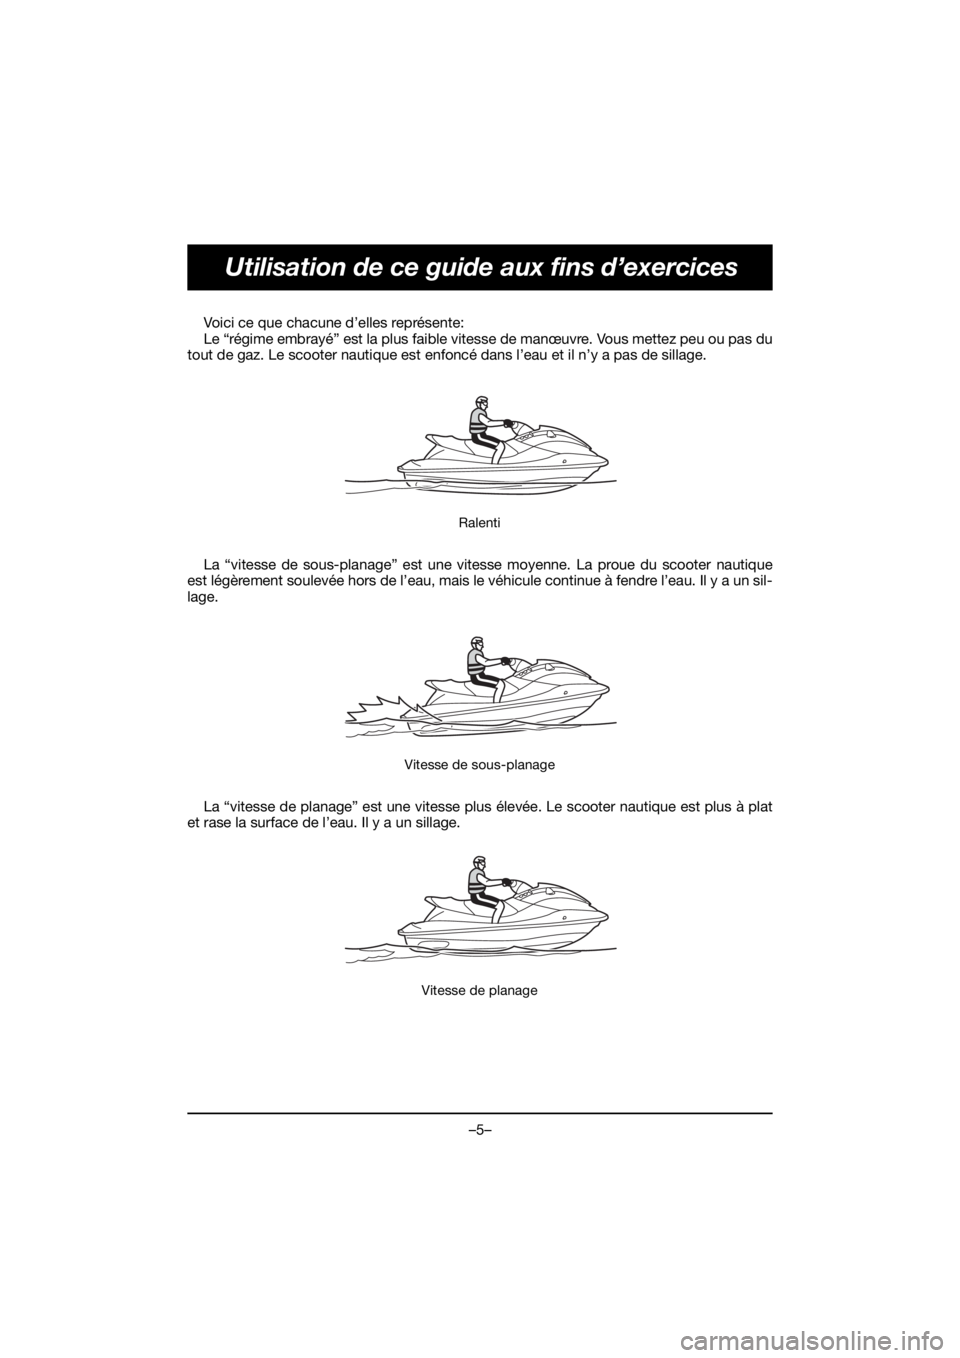 YAMAHA FJR1300 2020  Owners Manual –5–
Utilisation de ce guide aux fins d’exercices
Voici ce que chacune d’elles représente: 
Le “régime embrayé” est la plus faible vitesse de manœuvre. Vous mettez peu ou pas du
tout de